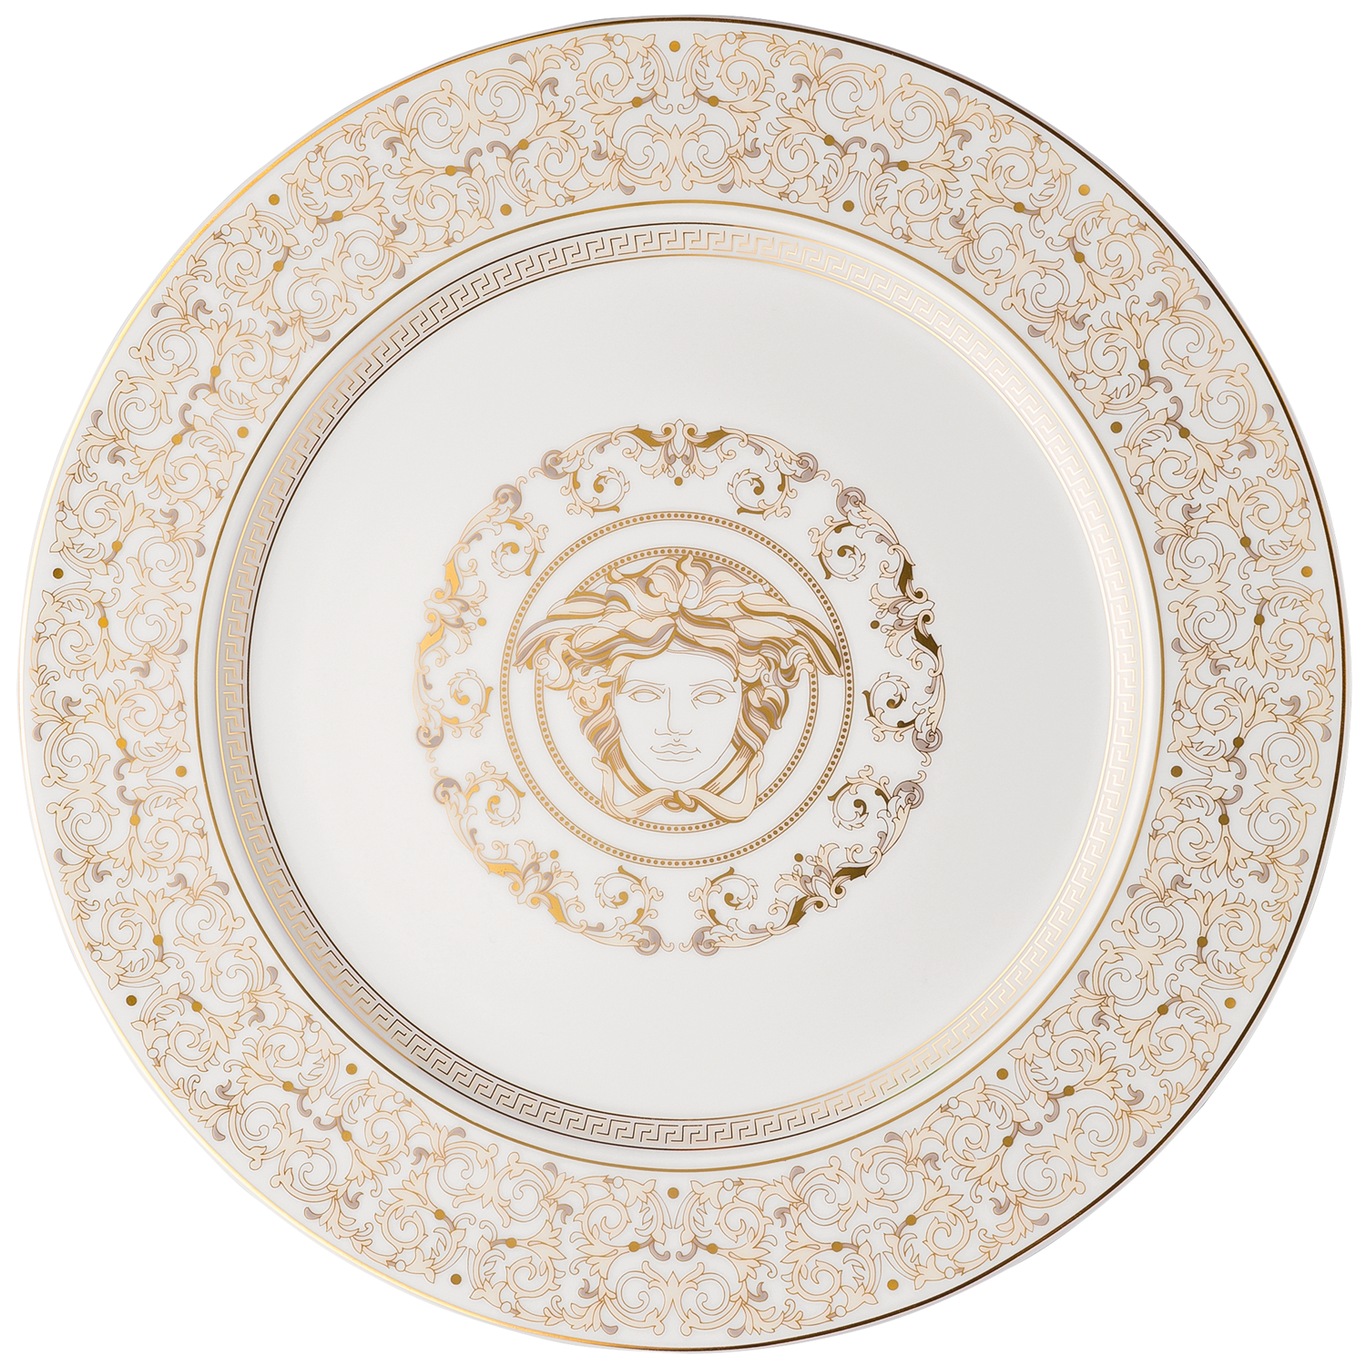 https://royaldesign.com/image/11/versace-medusa-gala-service-plate-30-cm-0?w=800&quality=80